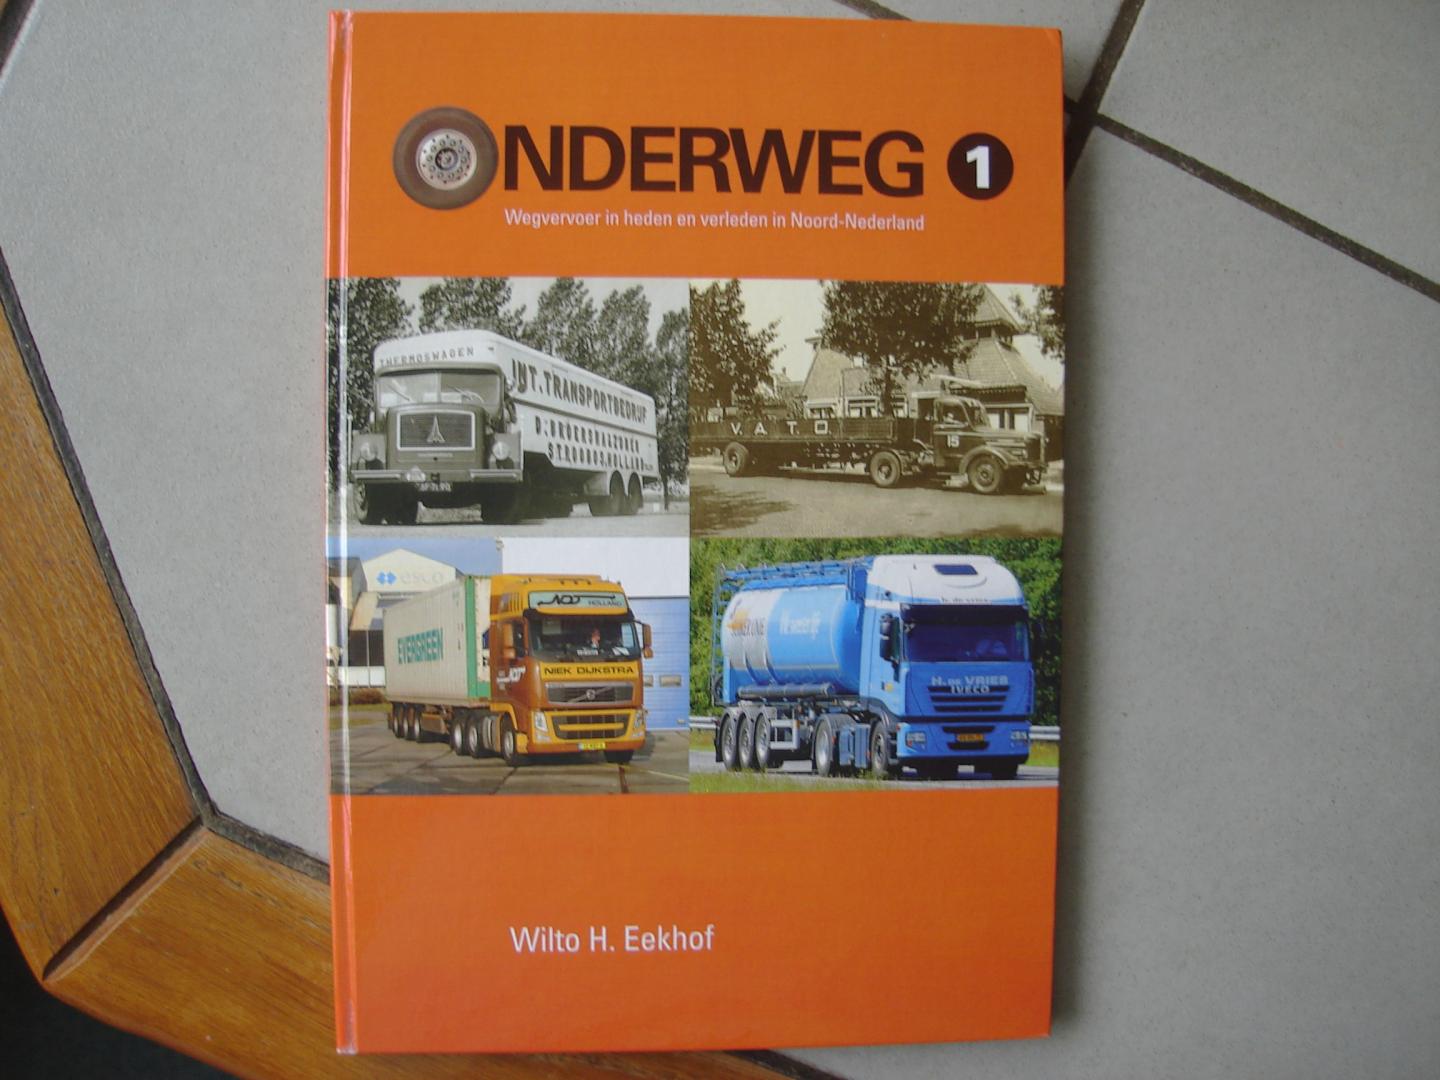 Wilto H. eekhof. - Onderweg deel 1. Wegvervoer in heden en verleden in Noord Nederland.